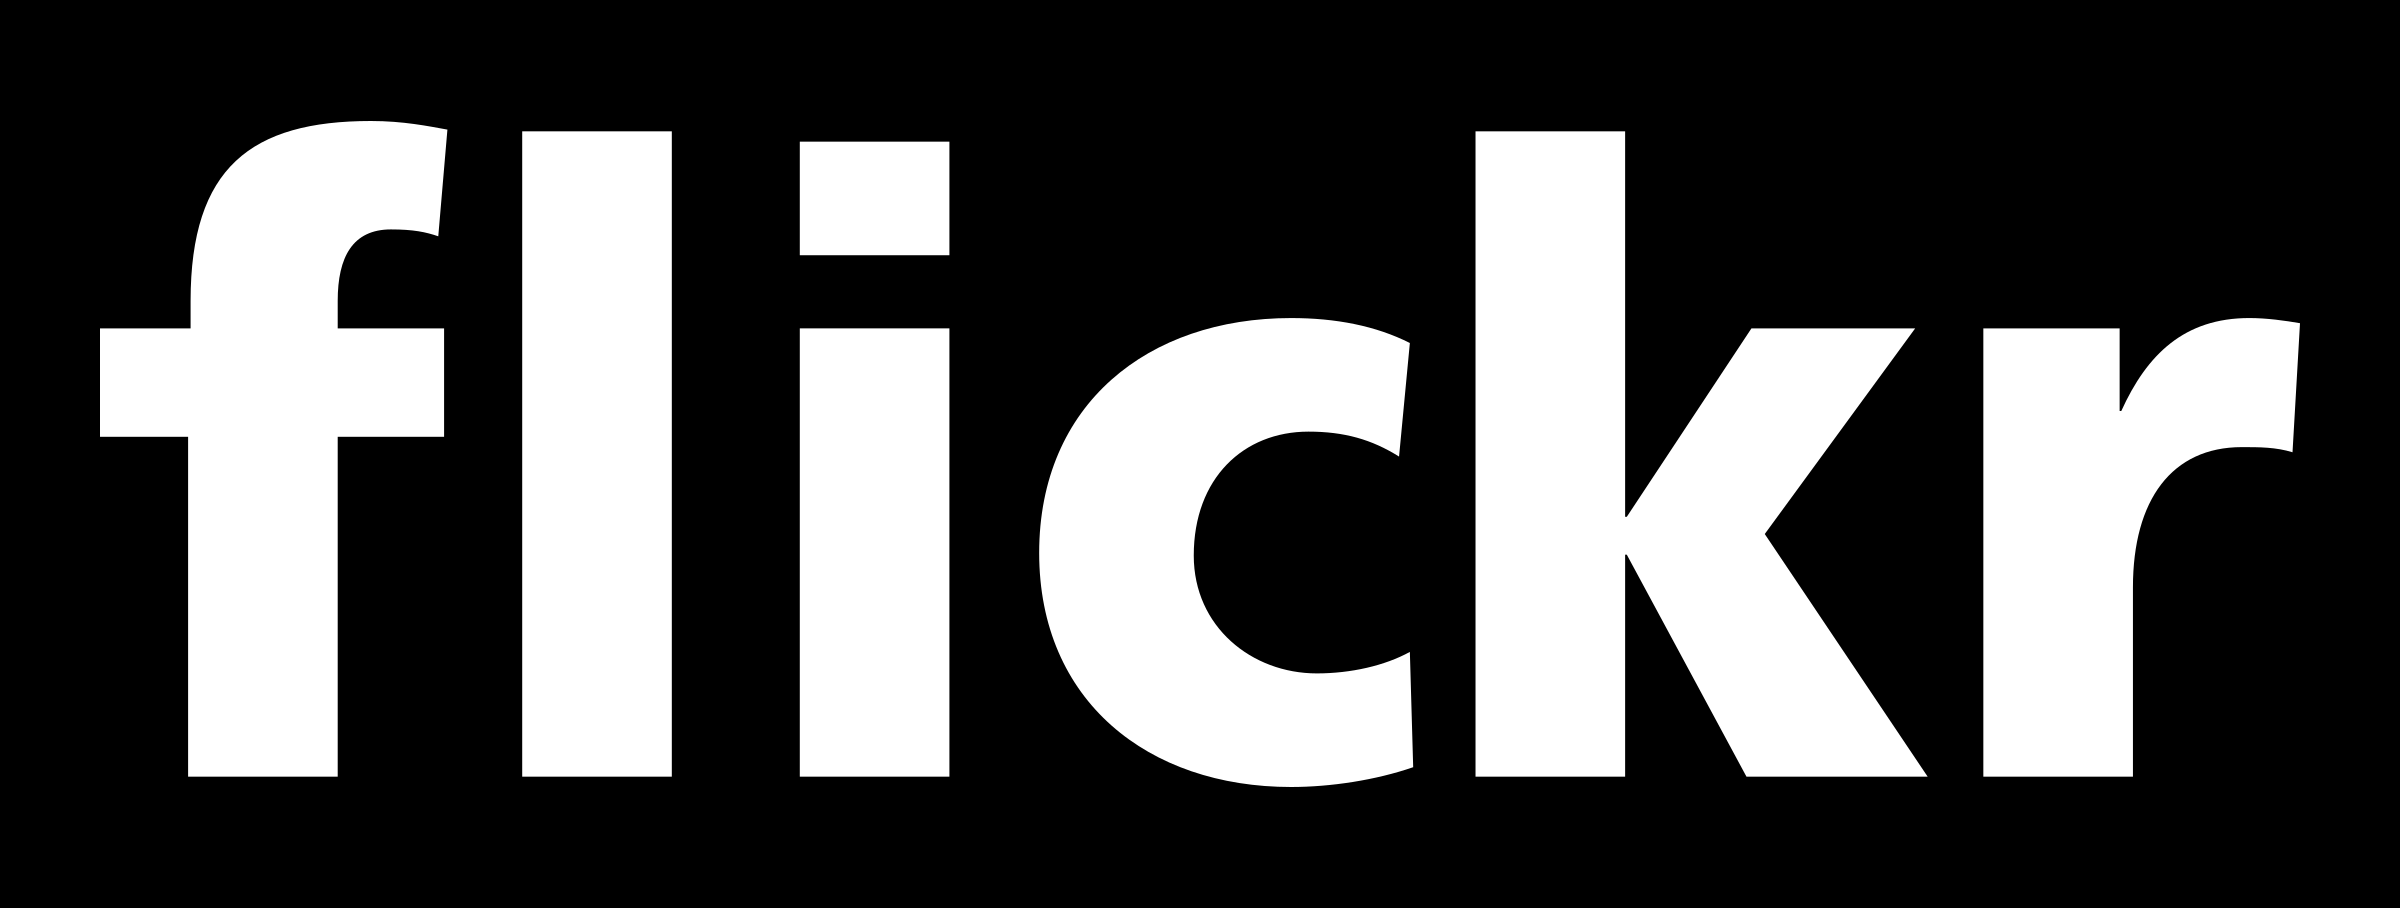 Flickr Logo - Flickr Logo PNG Transparent & SVG Vector